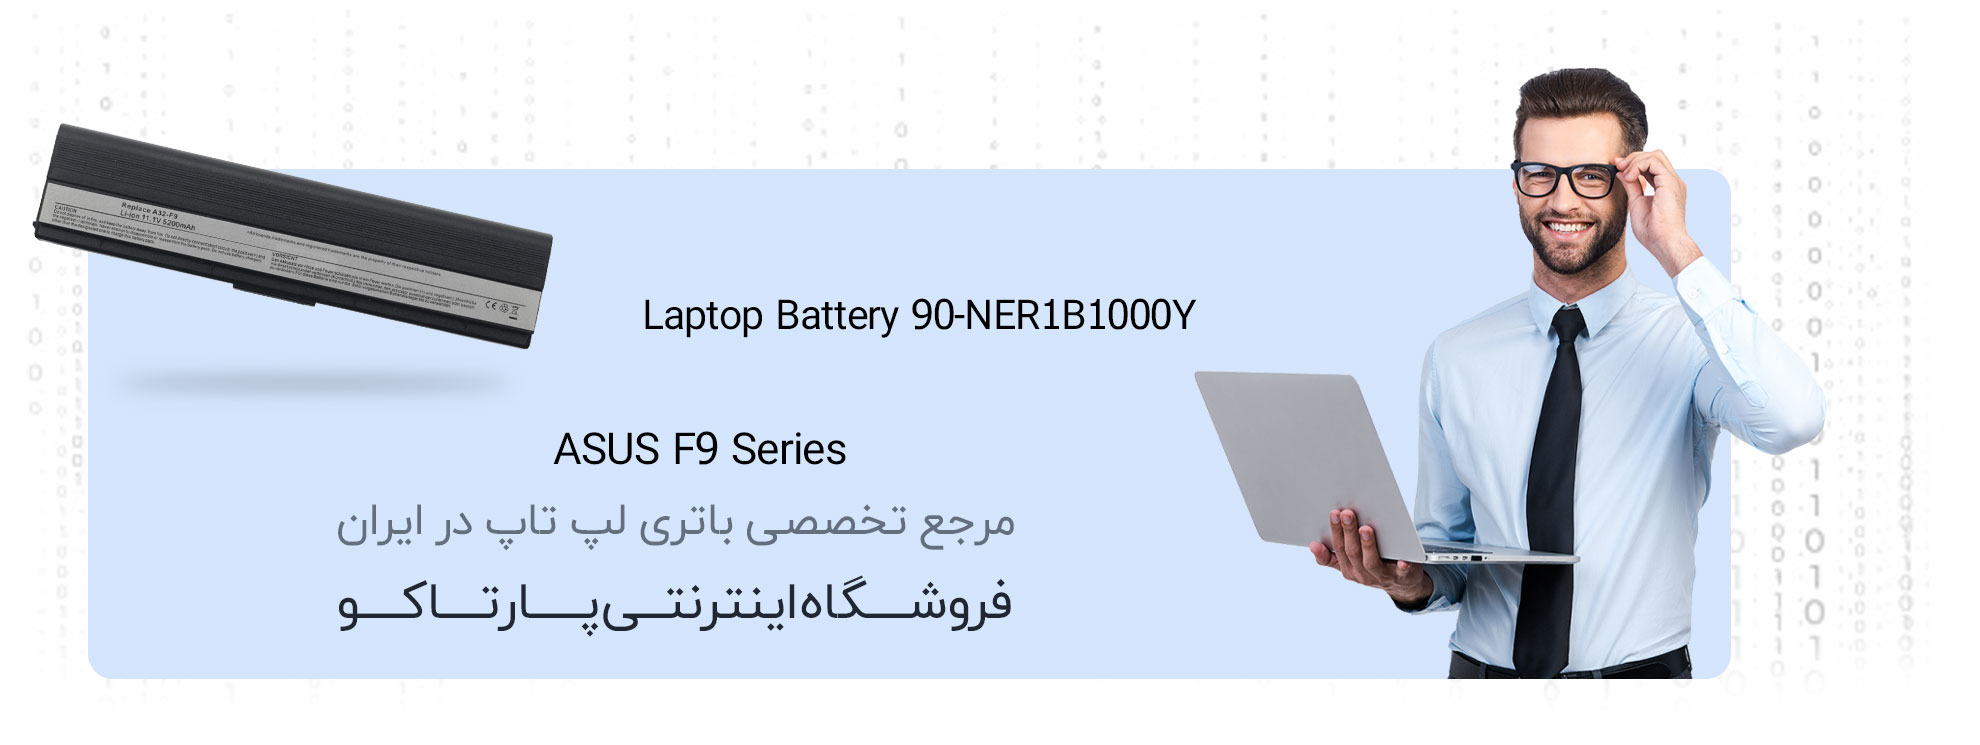 باتری لپ تاپ ایسوس F9